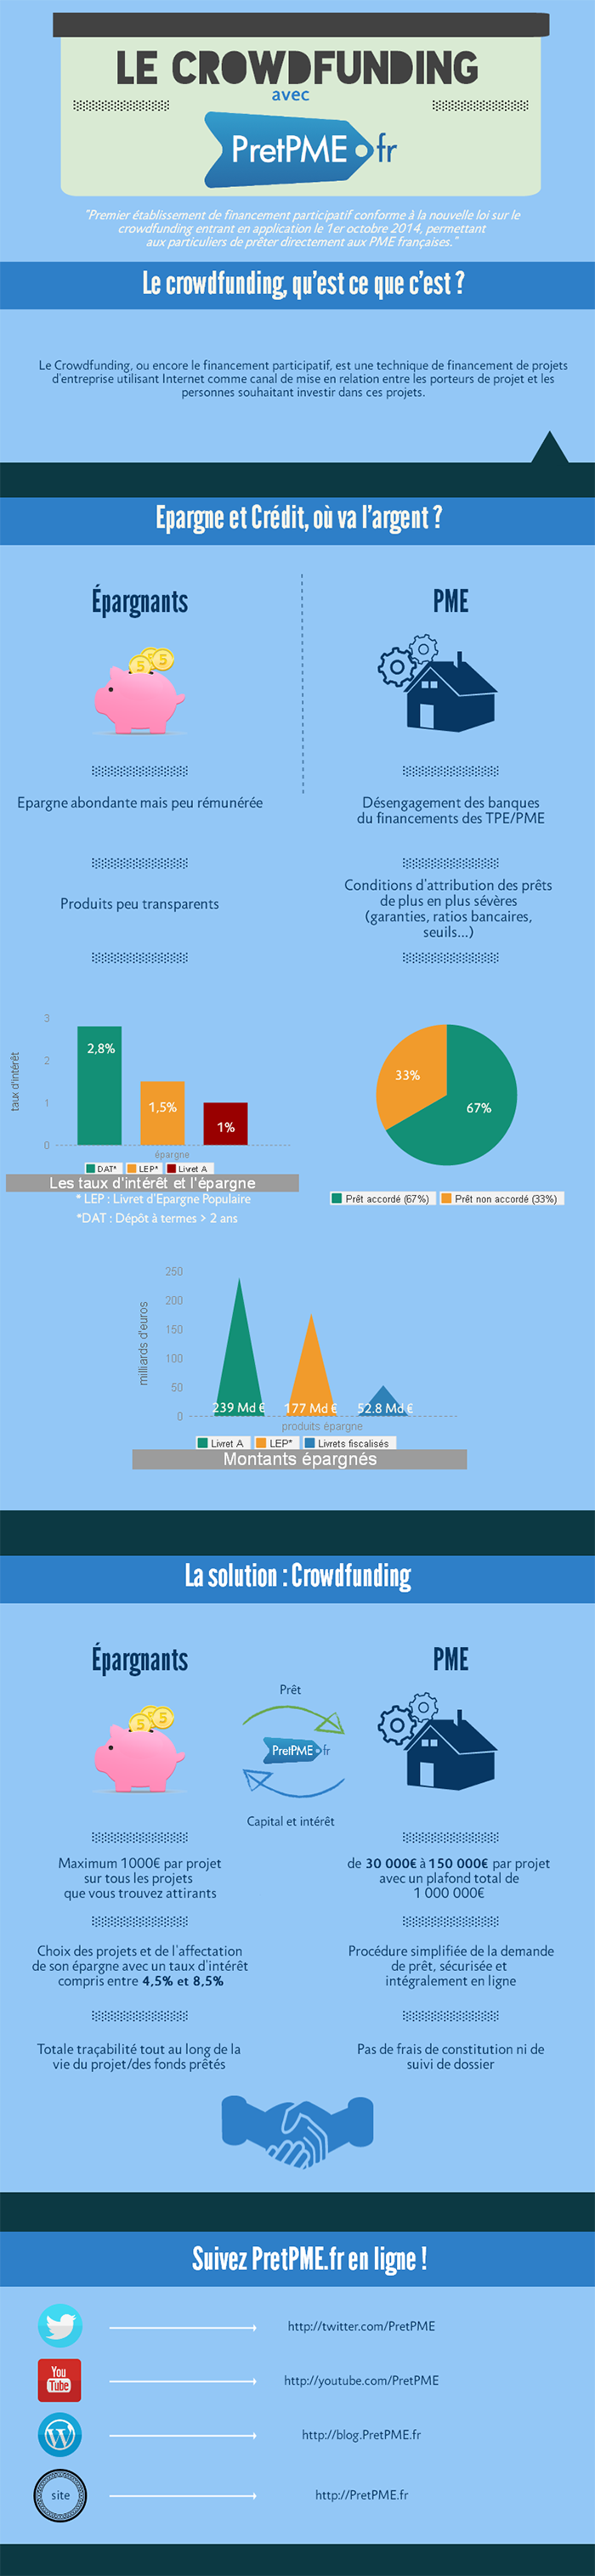 Infographie sur l'épargne et le crédit aux PME en France